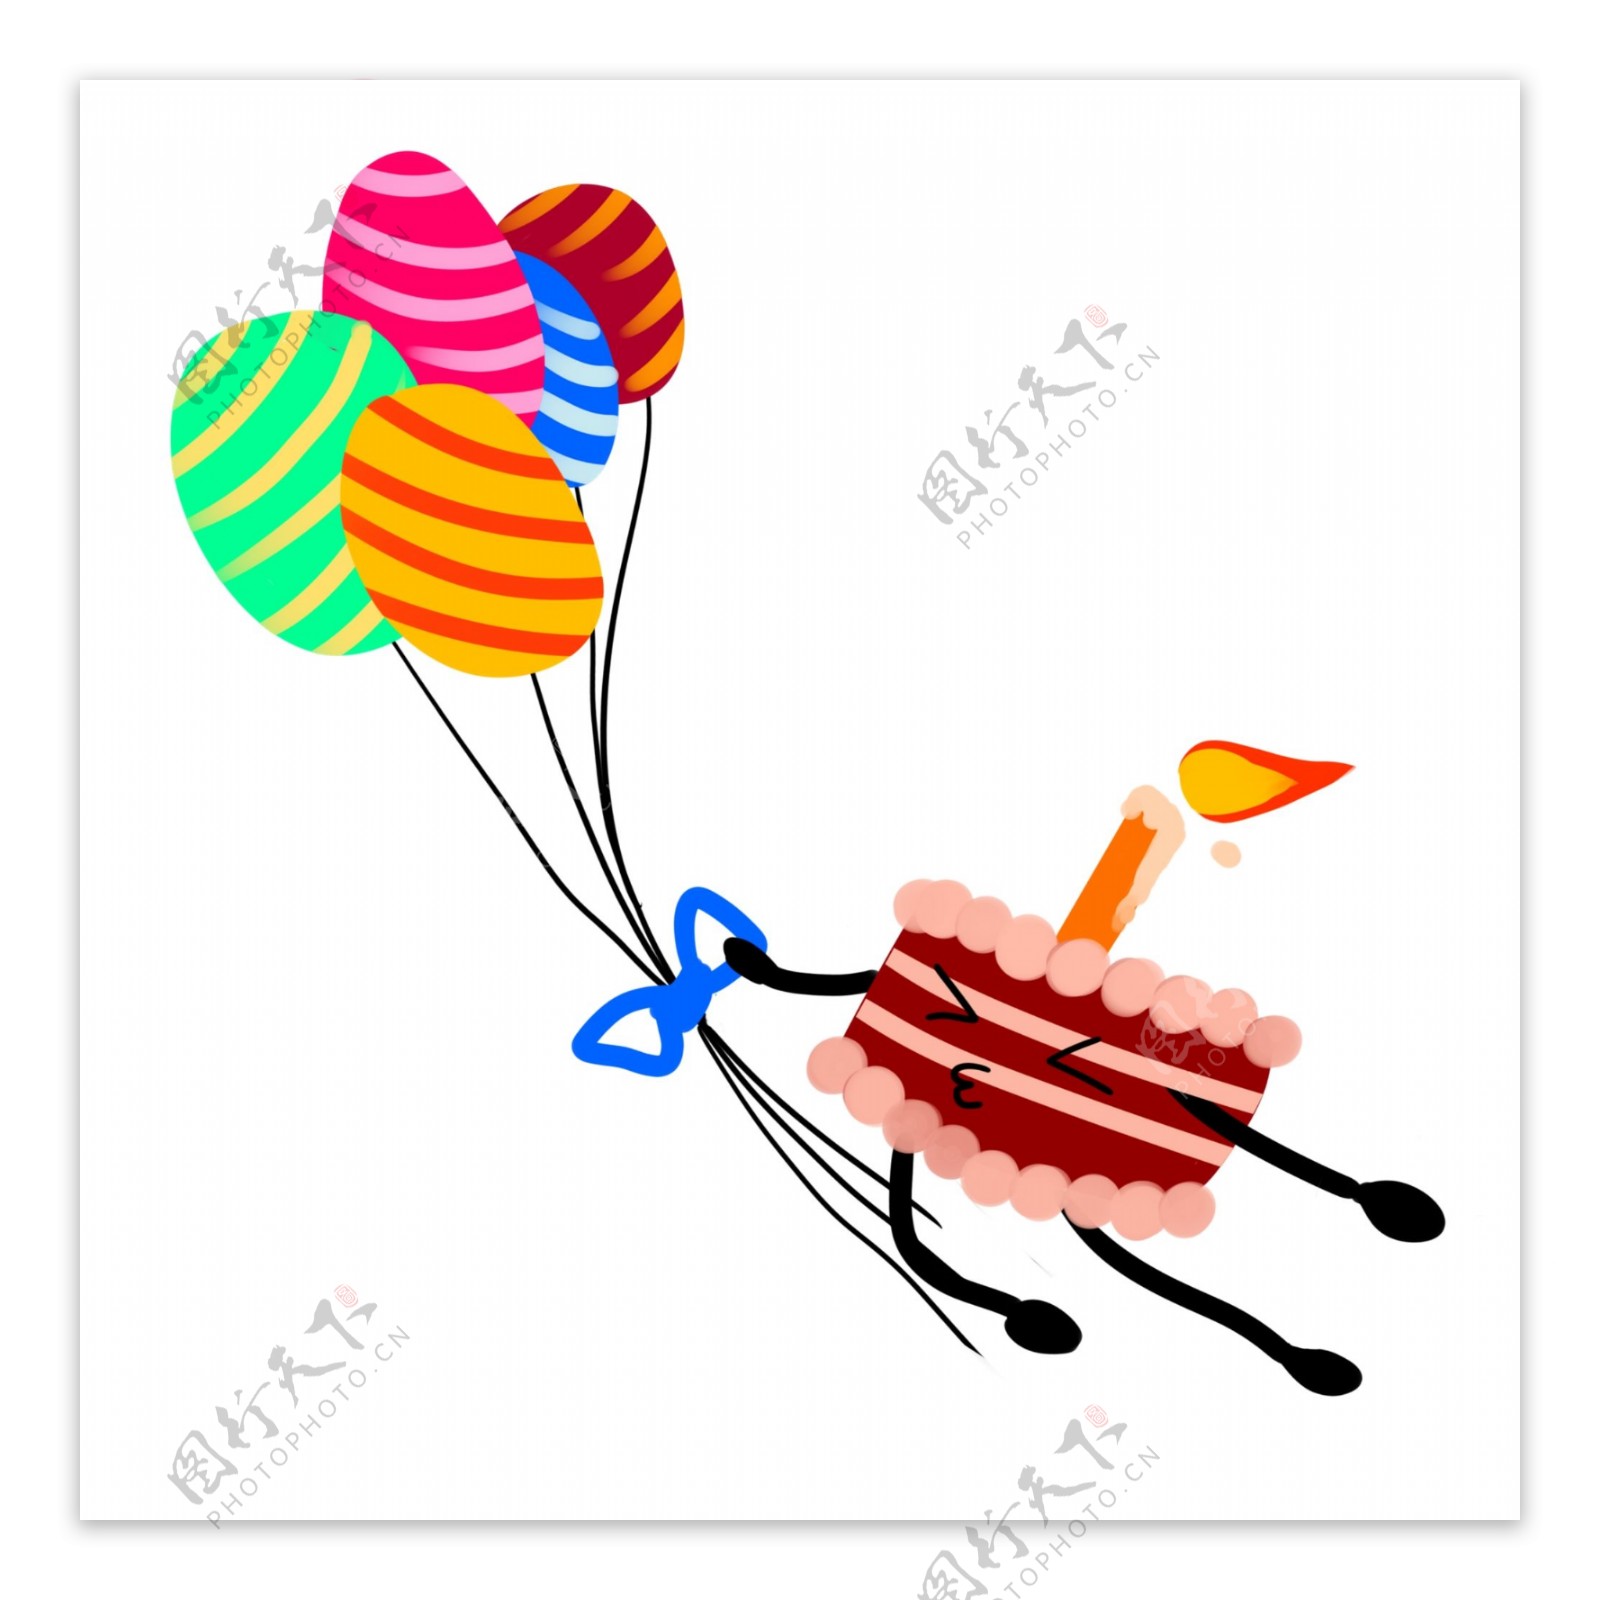 生日气球和蛋糕